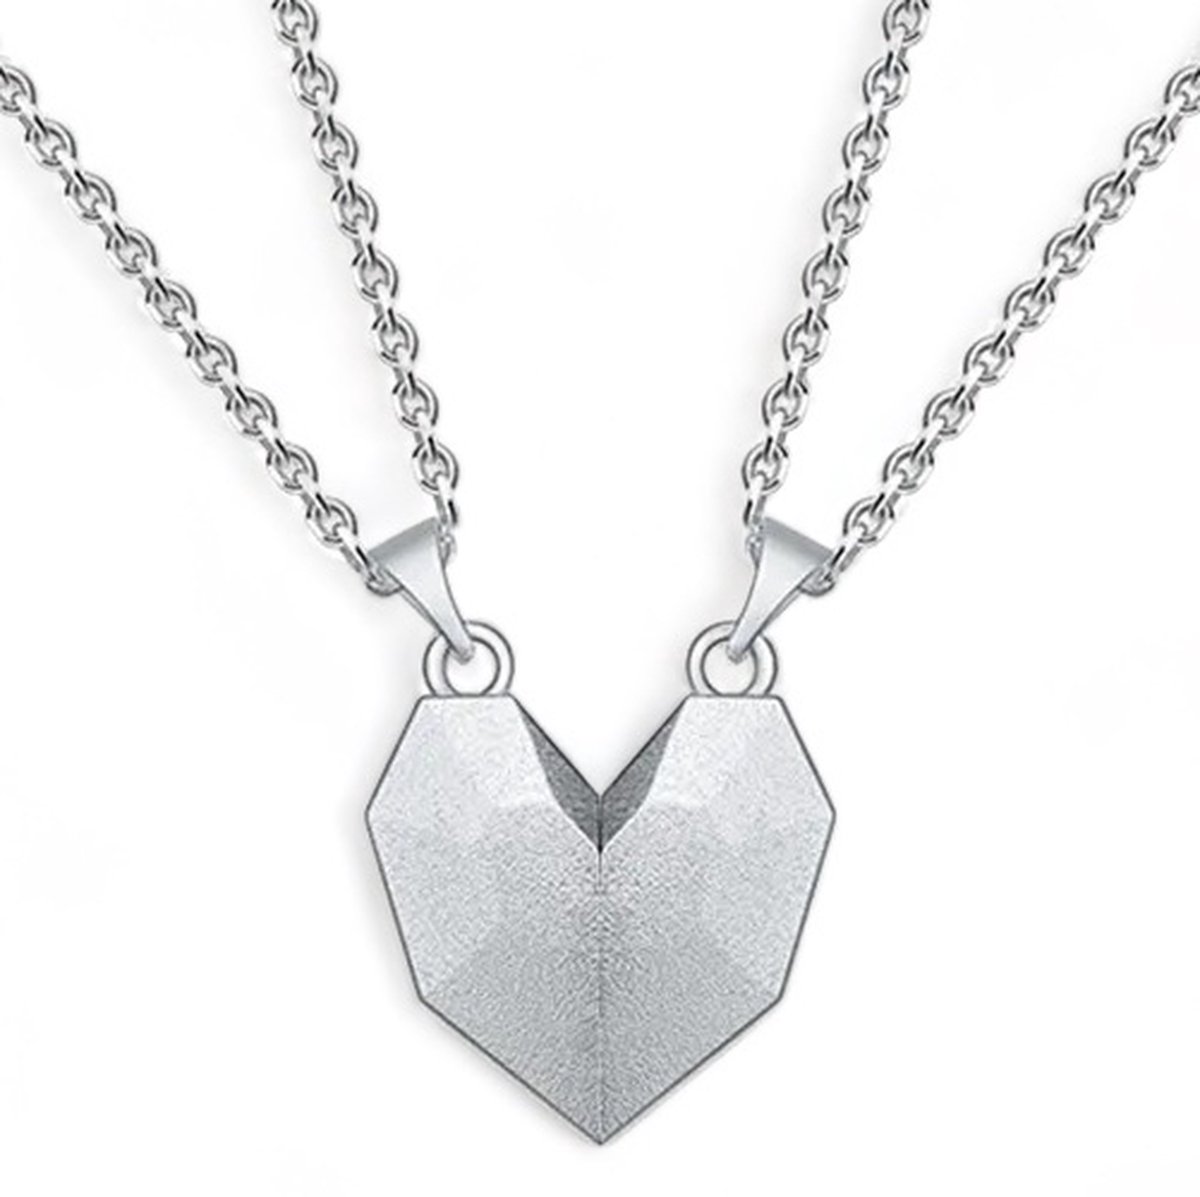 Magnetische Hartjes Ketting Set voor Hem en Haar - Zilver kleurig - Romantisch Liefdes Cadeau - Mannen Cadeautjes - Cadeau voor Man - TrendFox